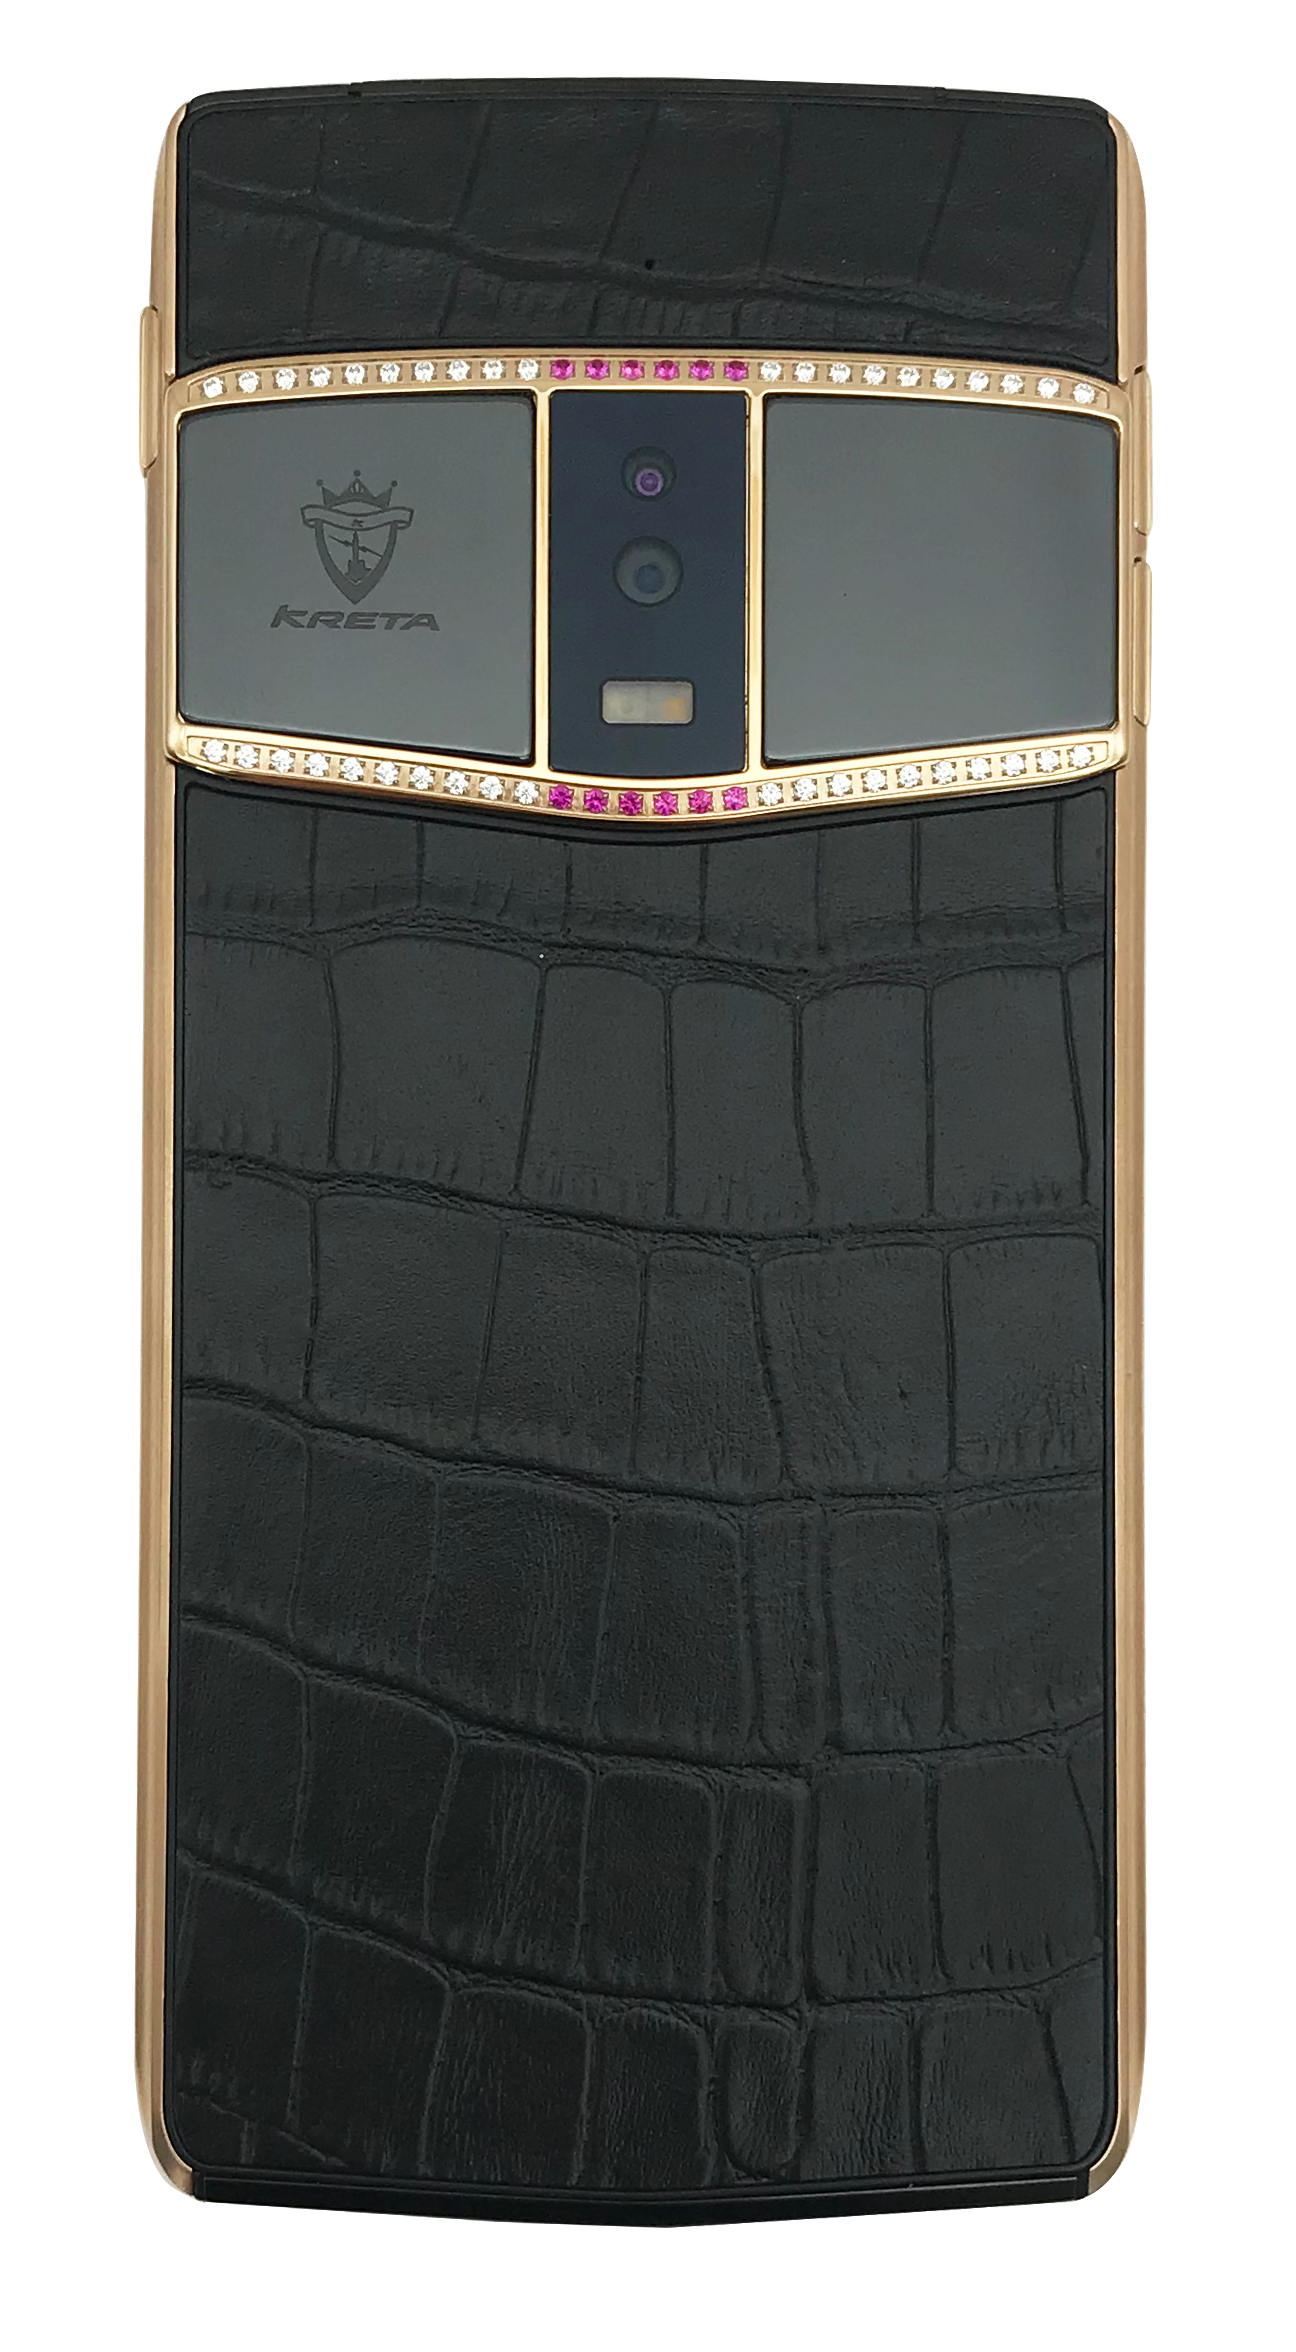 英国克里特kreta奢侈手机首推钻石版 仅售21800元